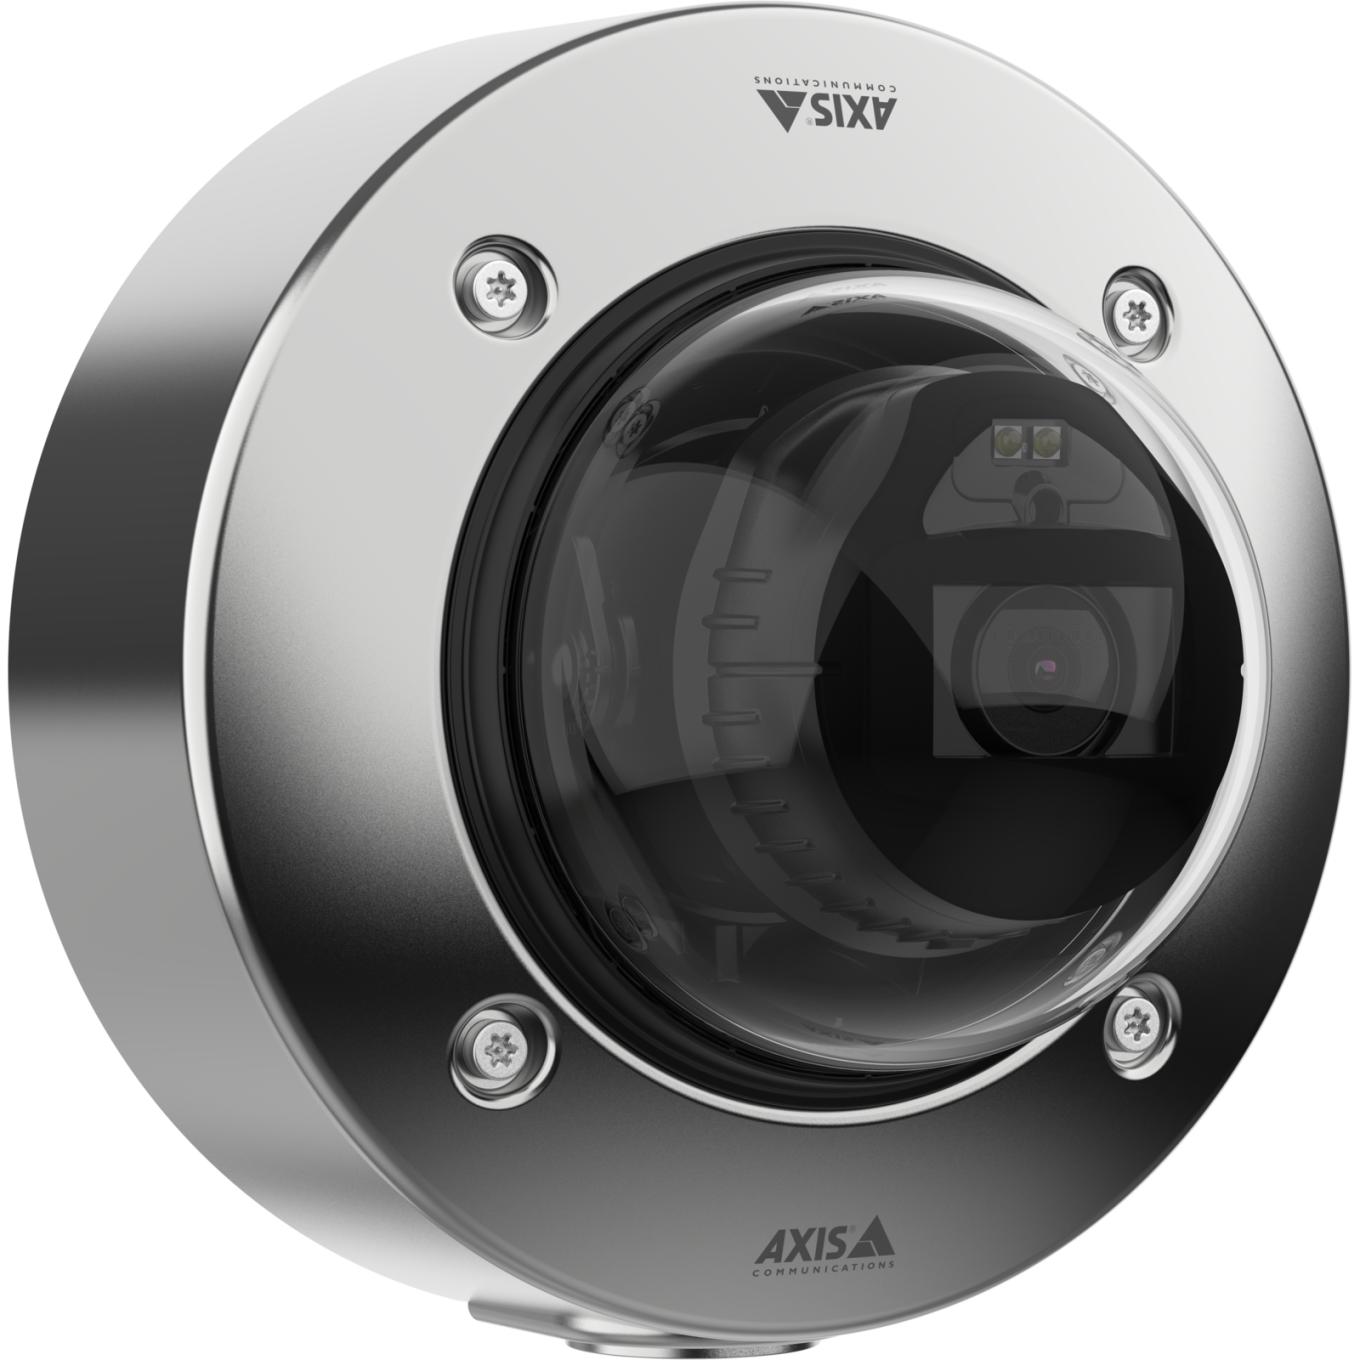 벽면에 장착된 AXIS P3268-SLVE Stainless steel Dome Camera, 오른쪽 각도에서 본 모습